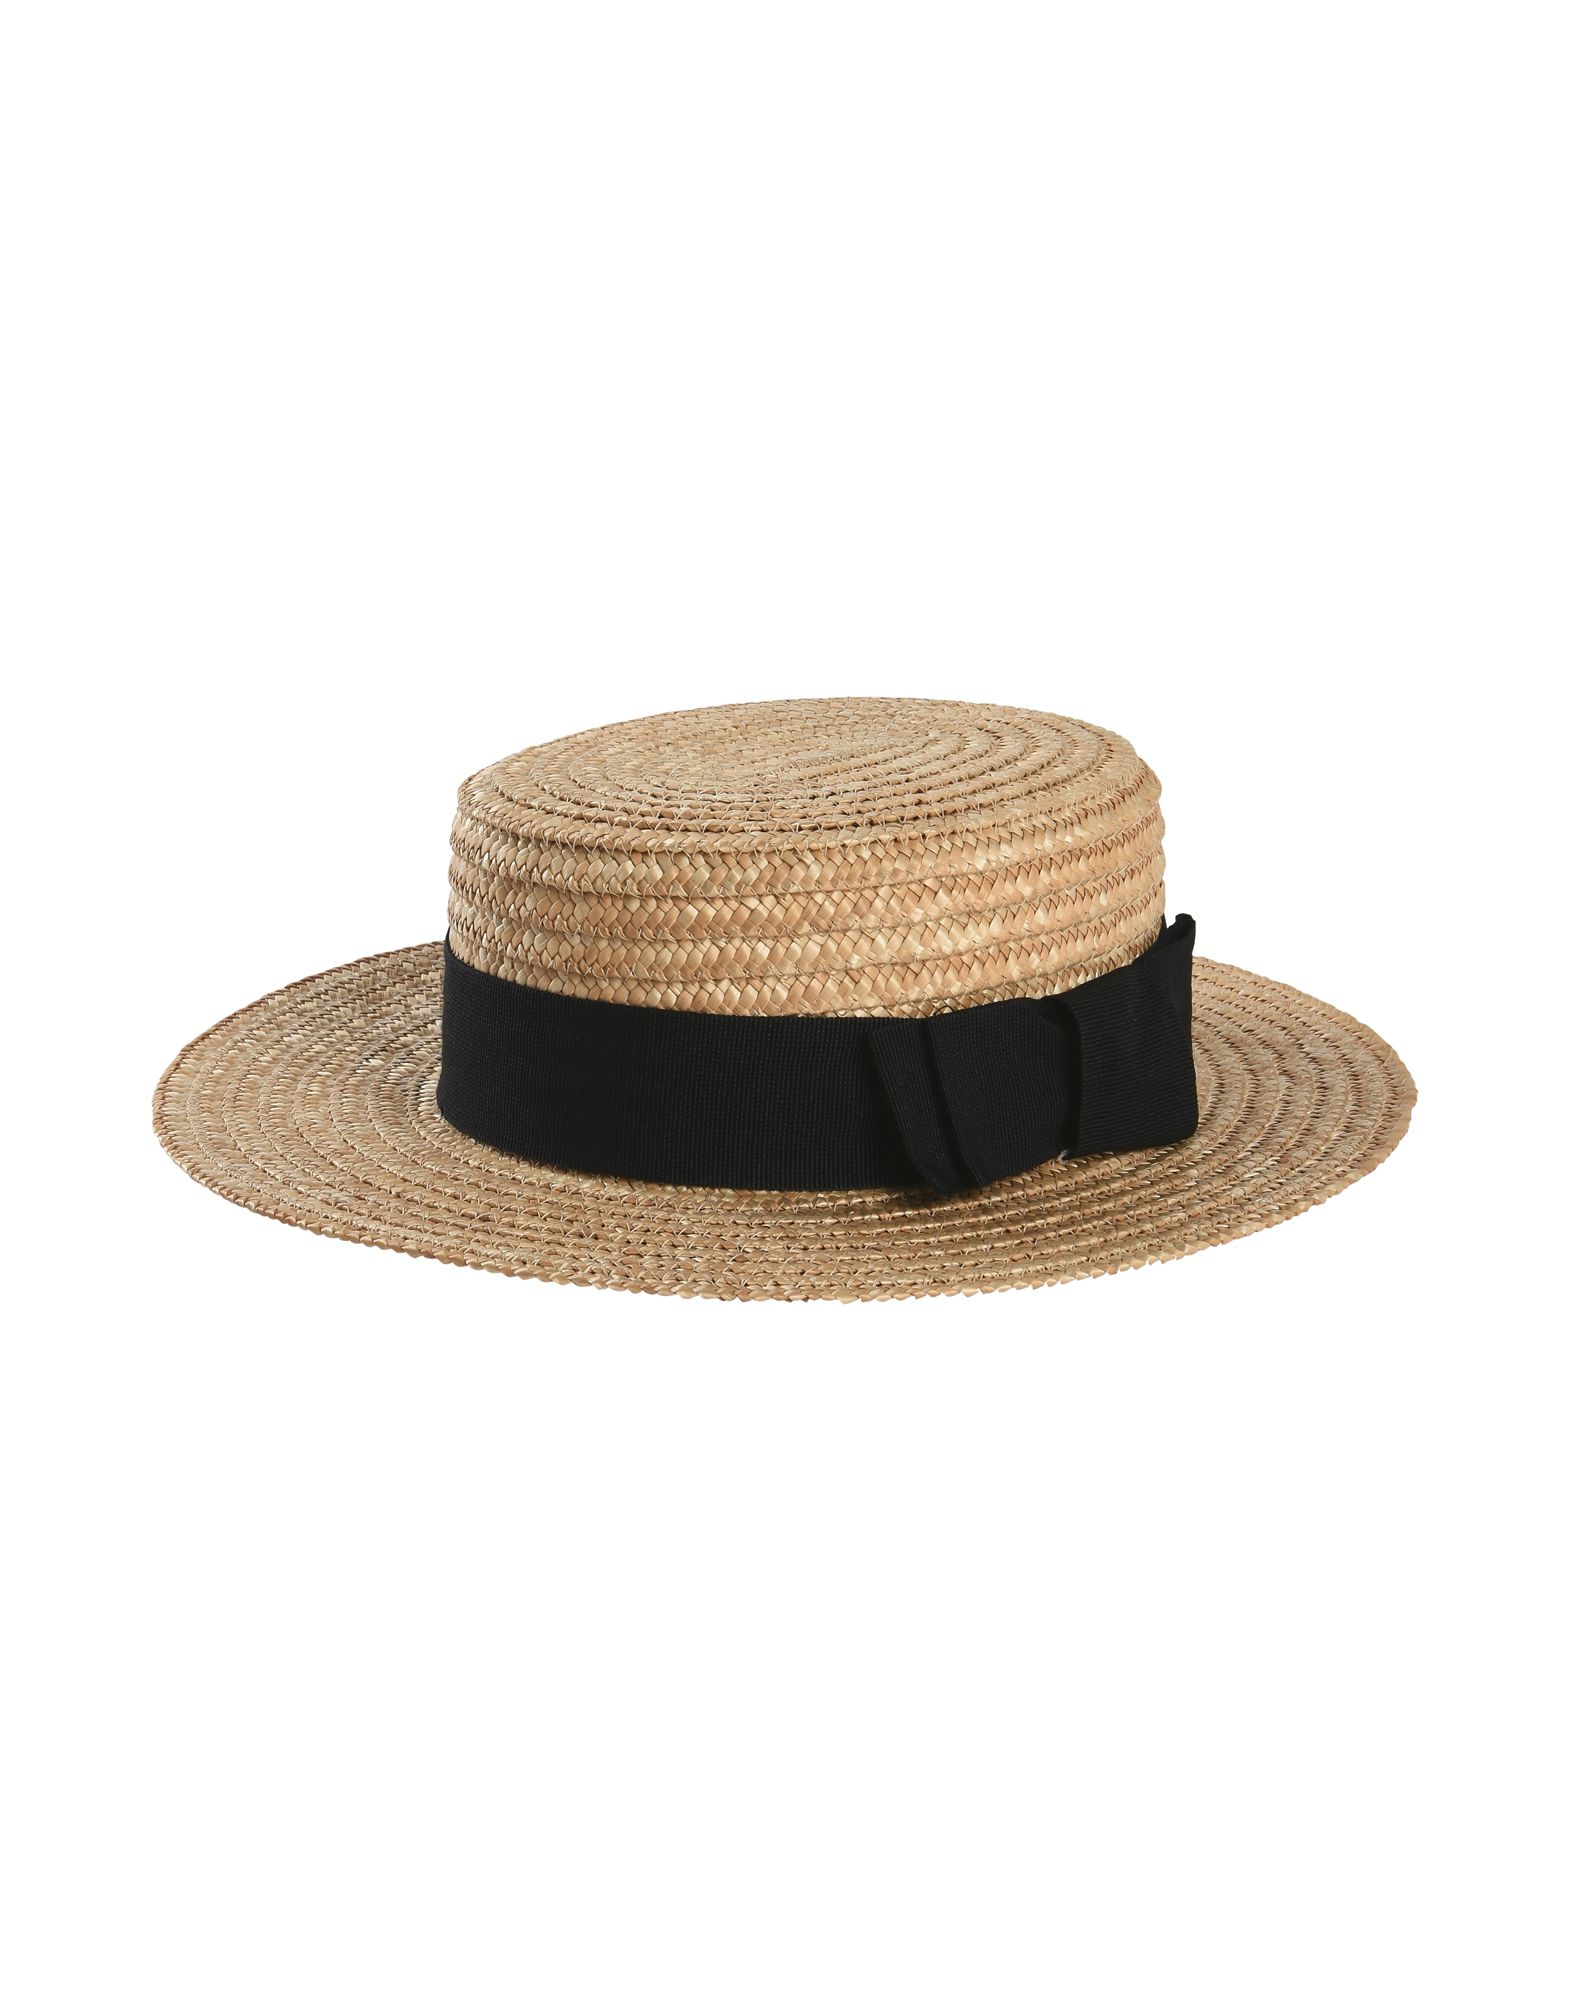 《送料無料》HELENE BERMAN London レディース 帽子 ベージュ 57 ストロー 100% STRAW BOATER